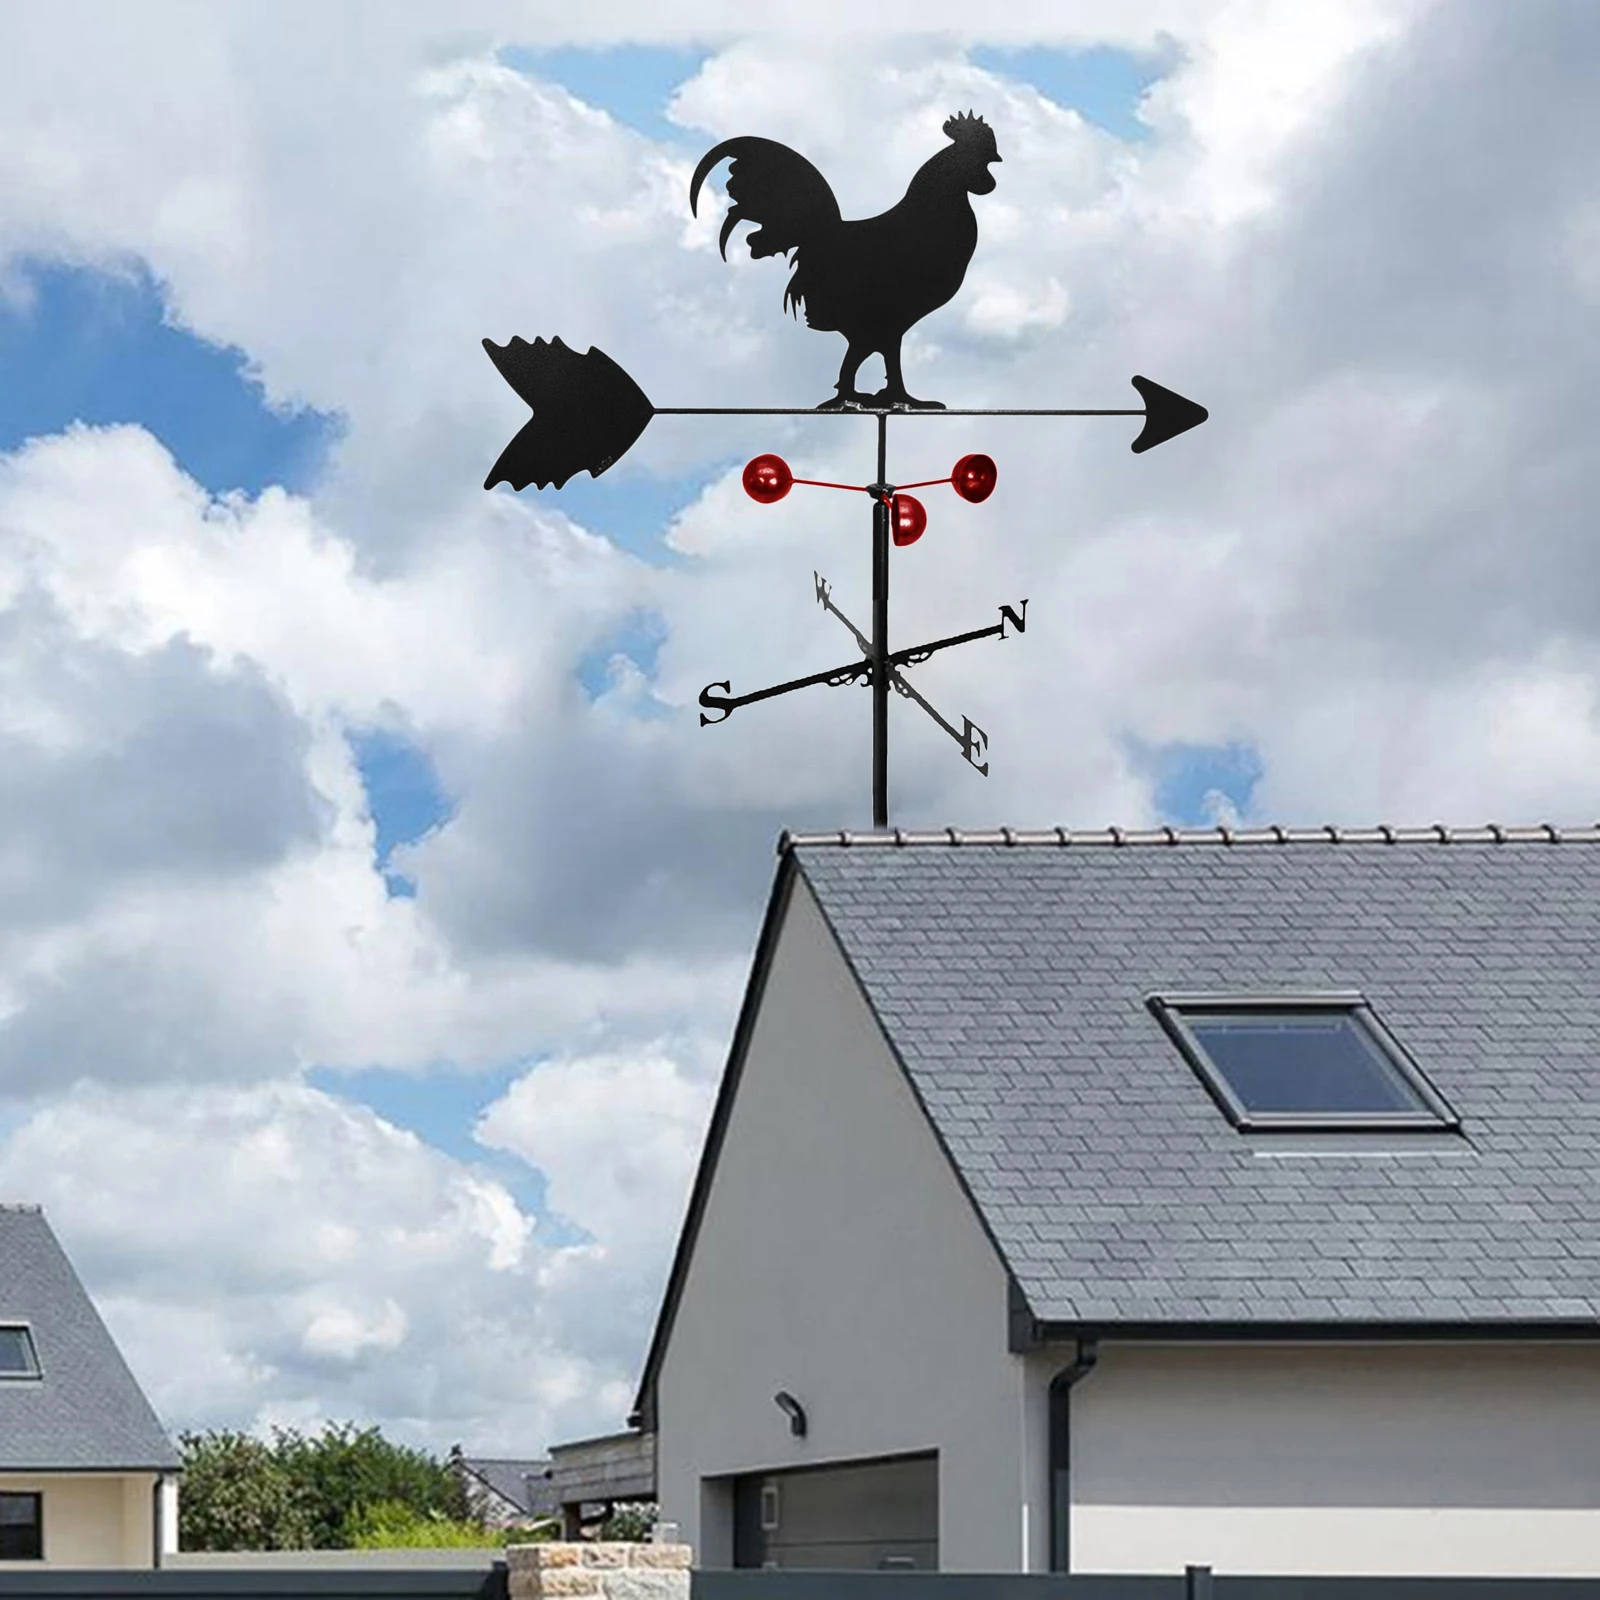 tempo palhetas vento indicador direção quintal telhados ferramenta de medição